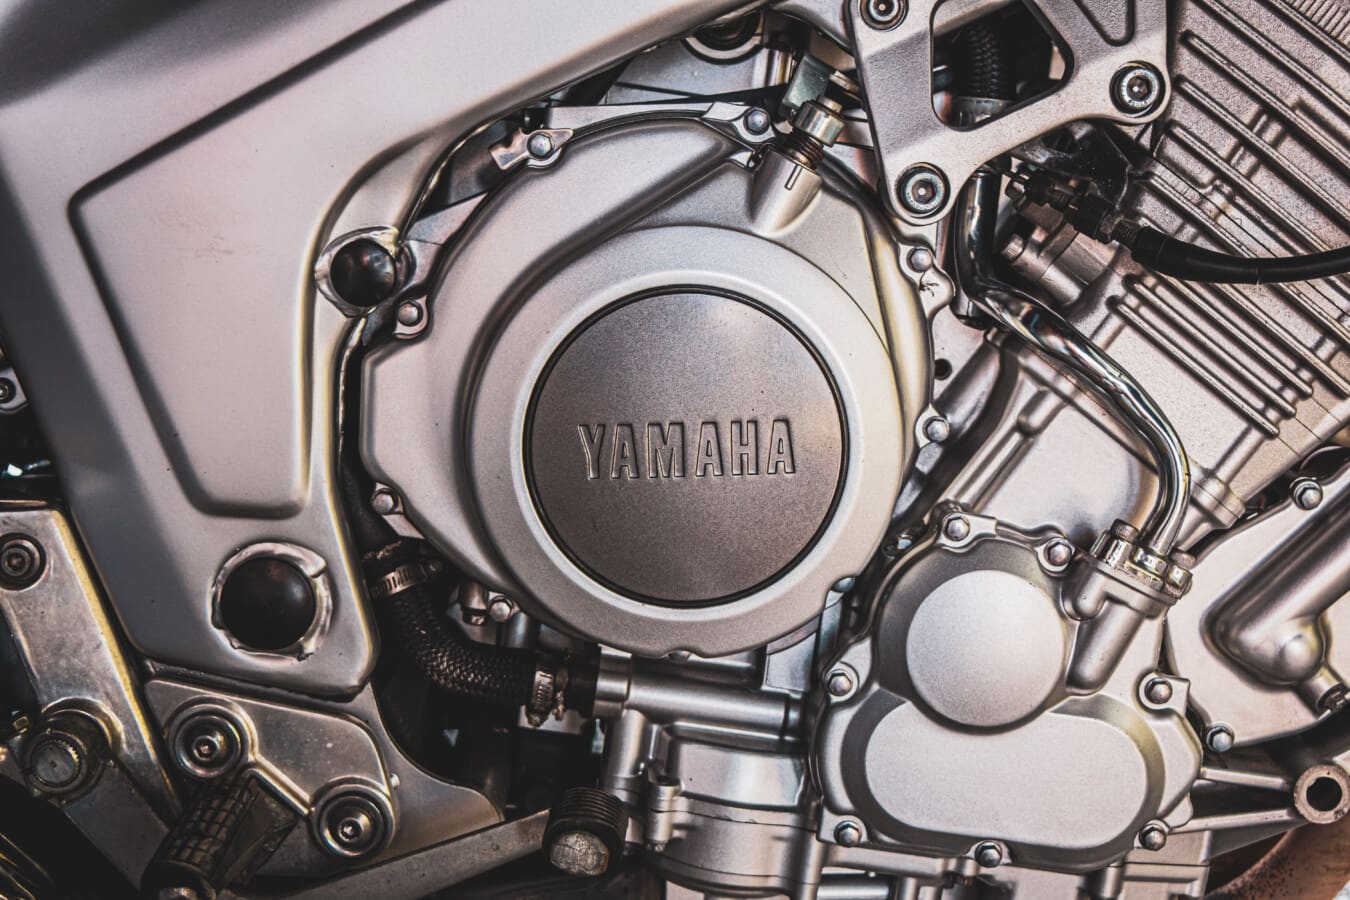 Yamaha, Motosiklet, Motoru, metalik, Krom, mühendislik, tamir atölyesi, teknoloji, Sanayi, Elektronik